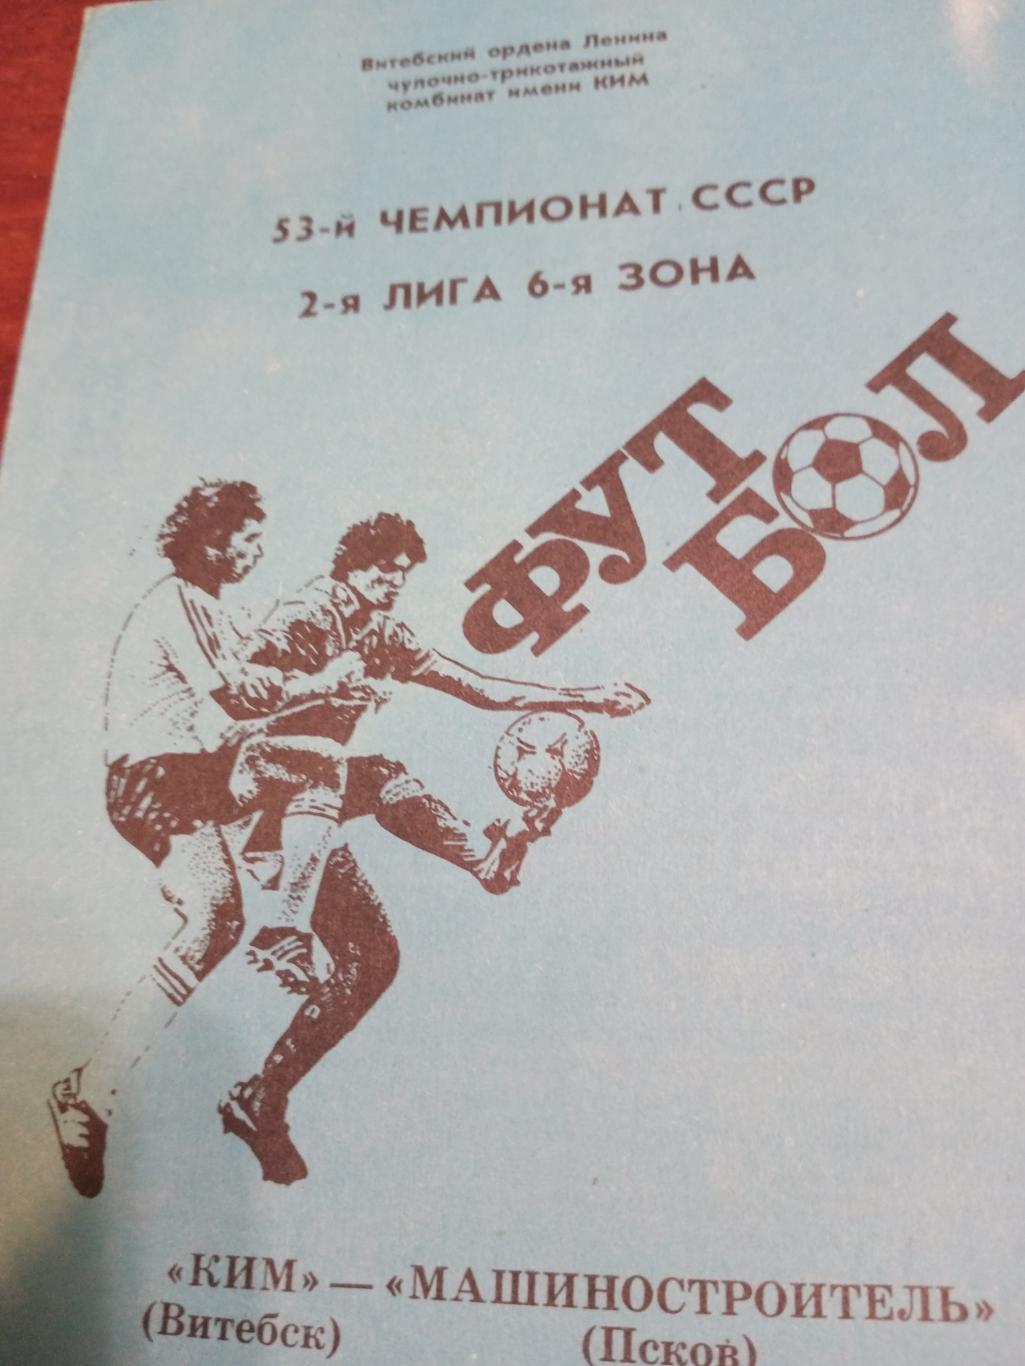 КИМ Витабск - Машиностроитель Псков-12 июня 1990 г